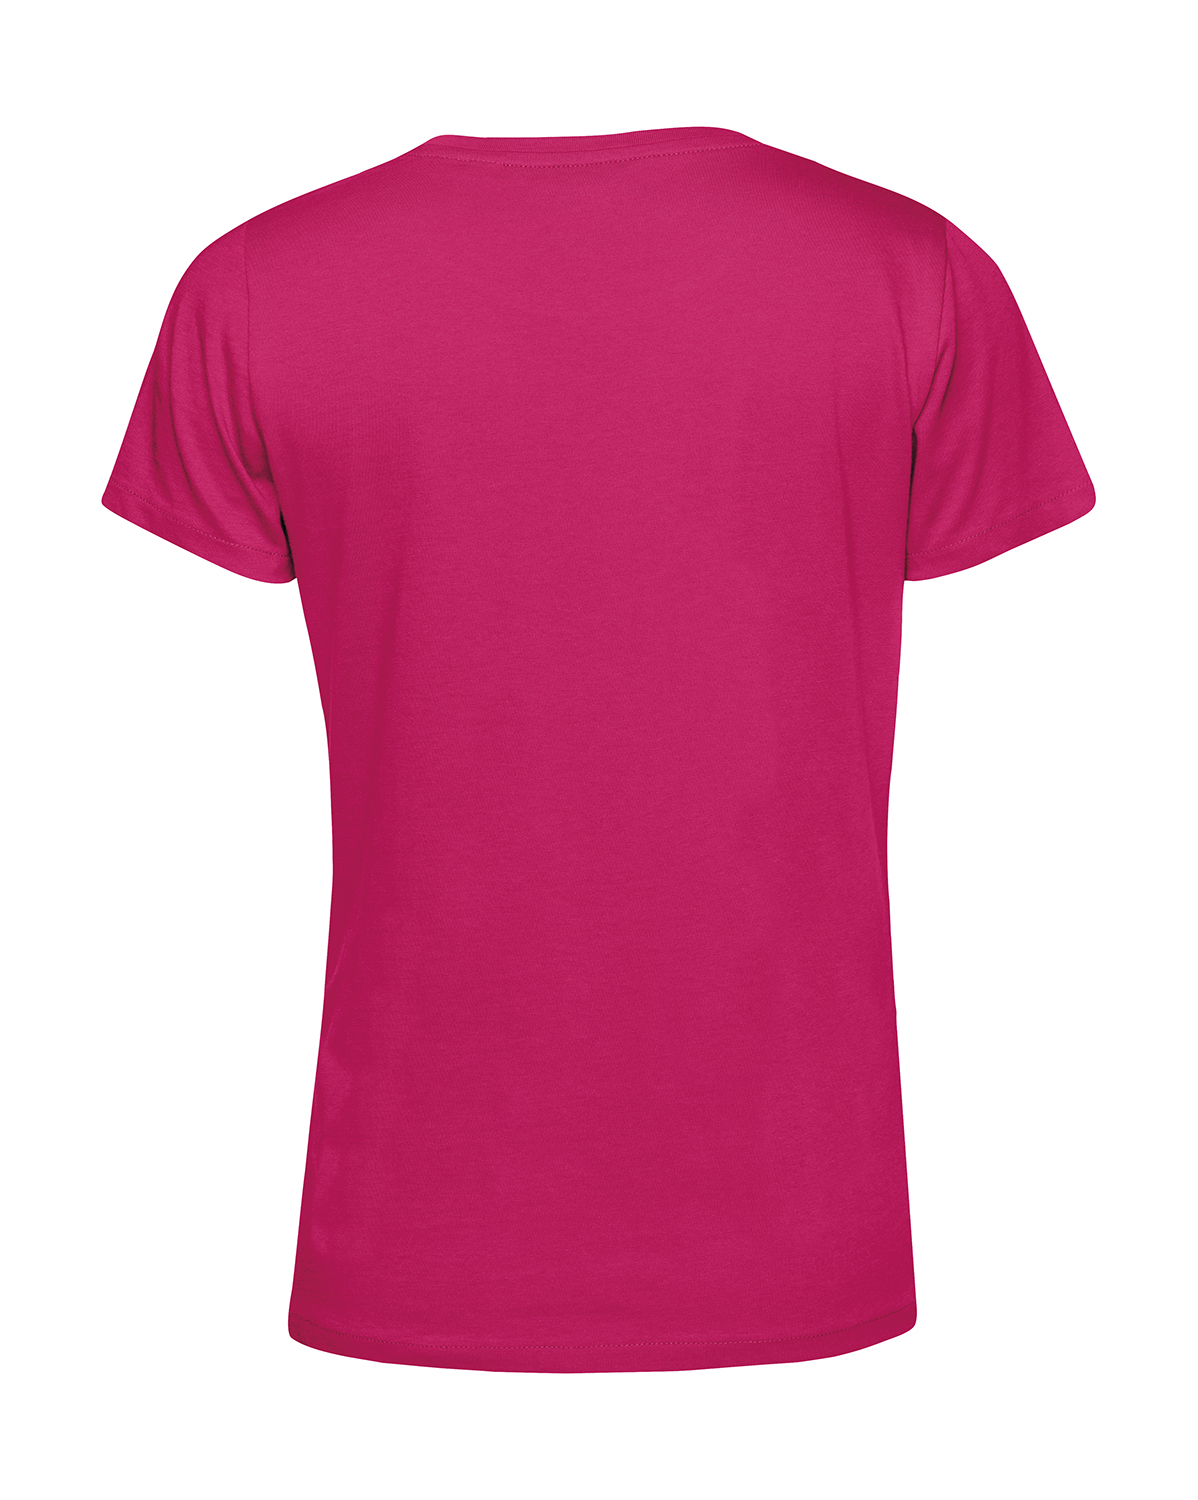 Nachhaltiges T-Shirt Damen 2Takt - Trotz Mauerfall und Wende S50